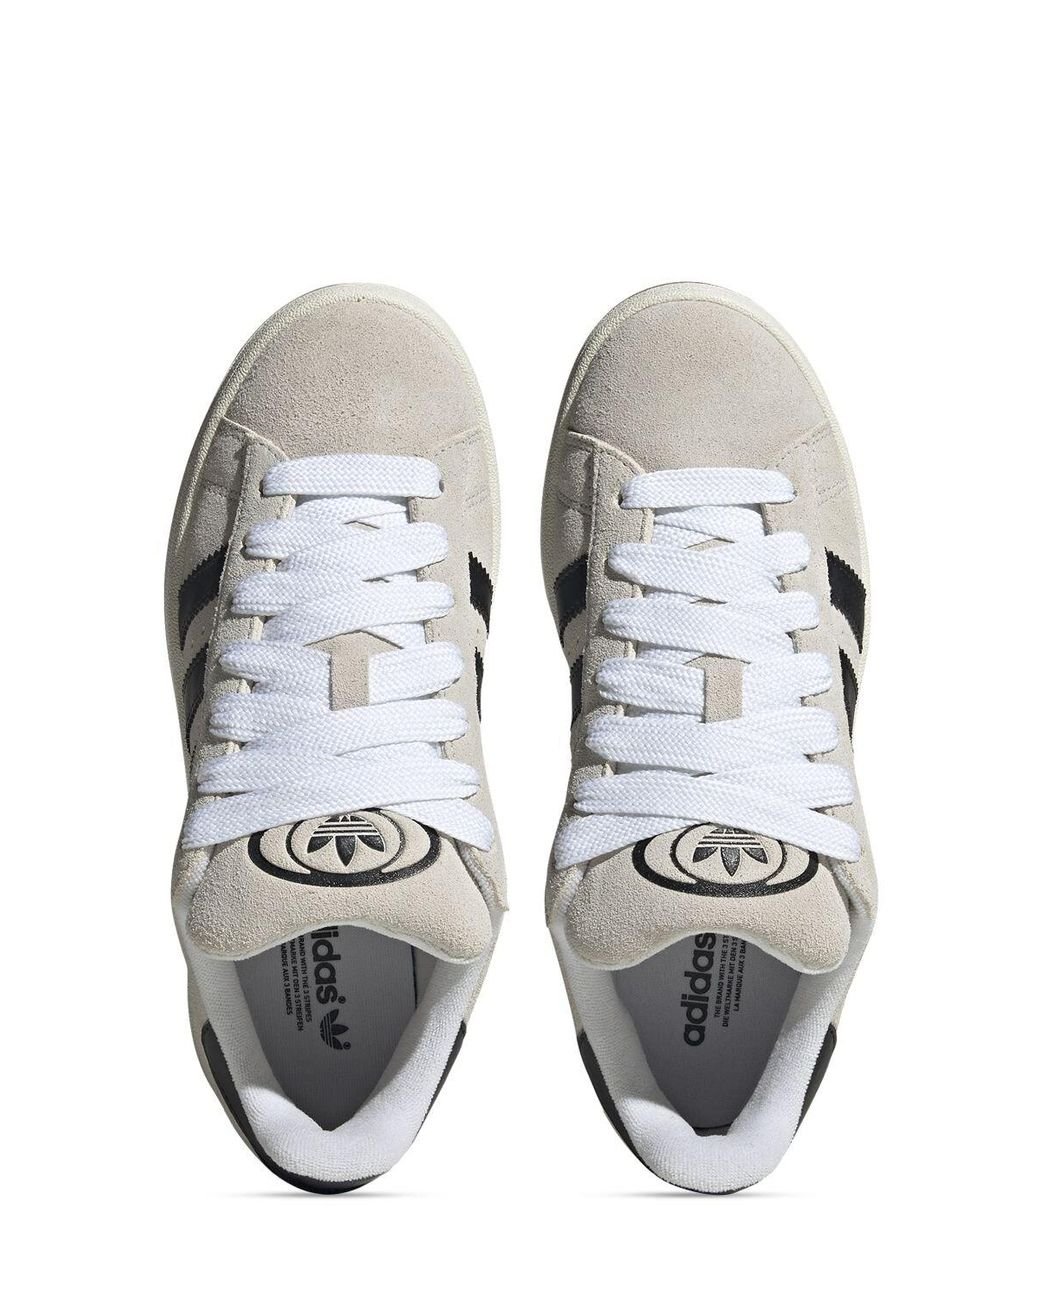 adidas Originals Campus 00s Shoes in White | Lyst UK